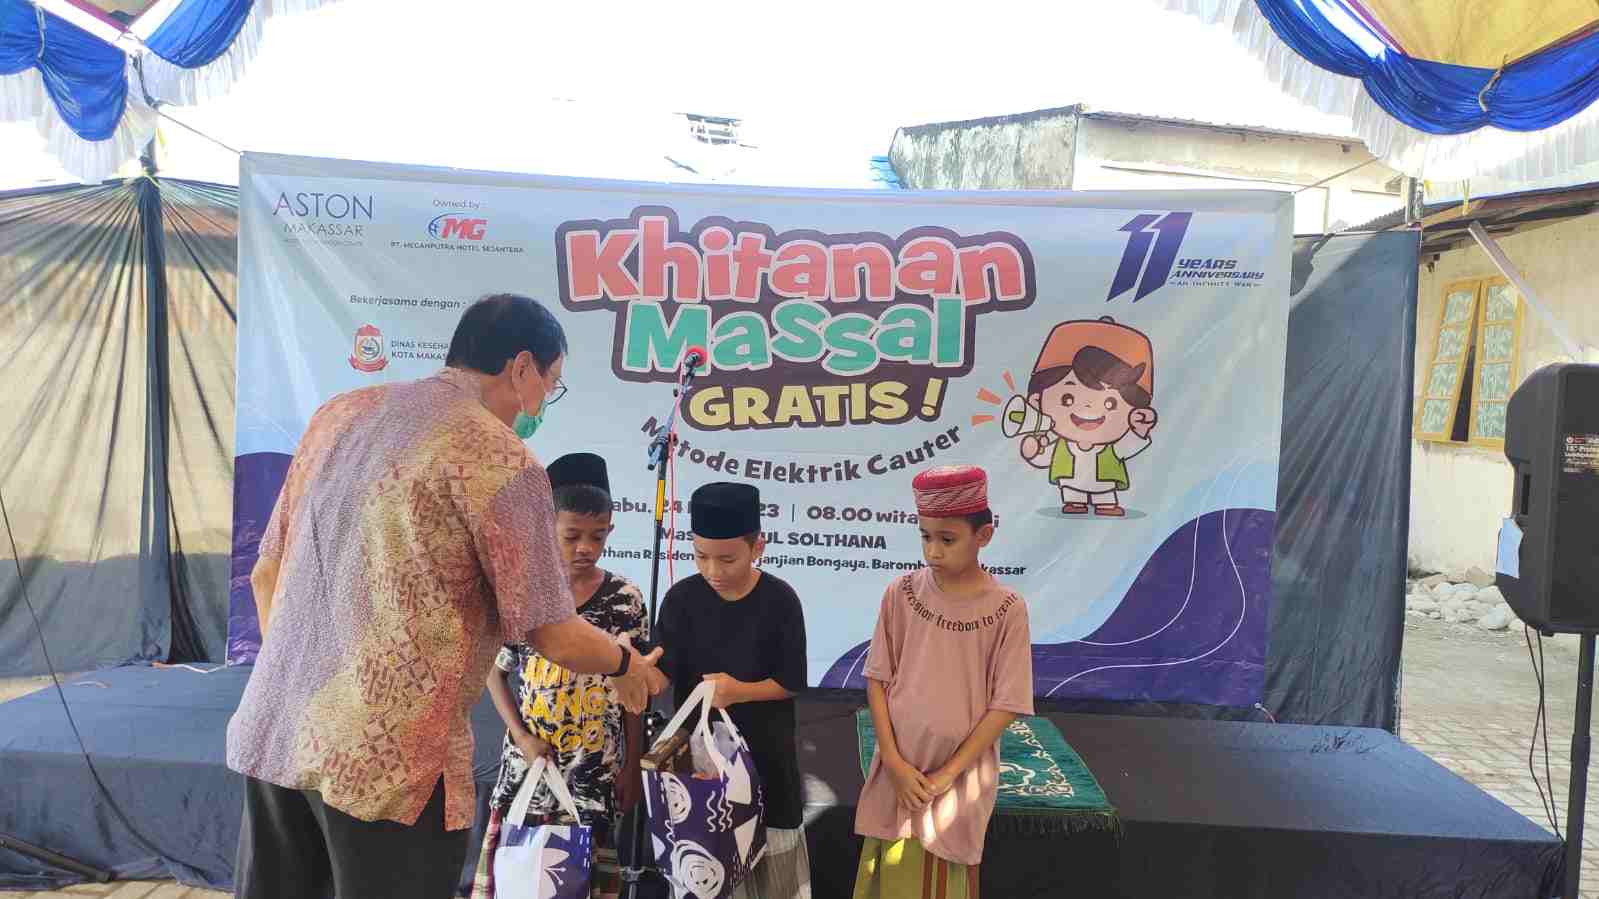 HUT ke-11 Tahun, ASTON Makassar Hotel Gelar Khitanan Massal Gratis